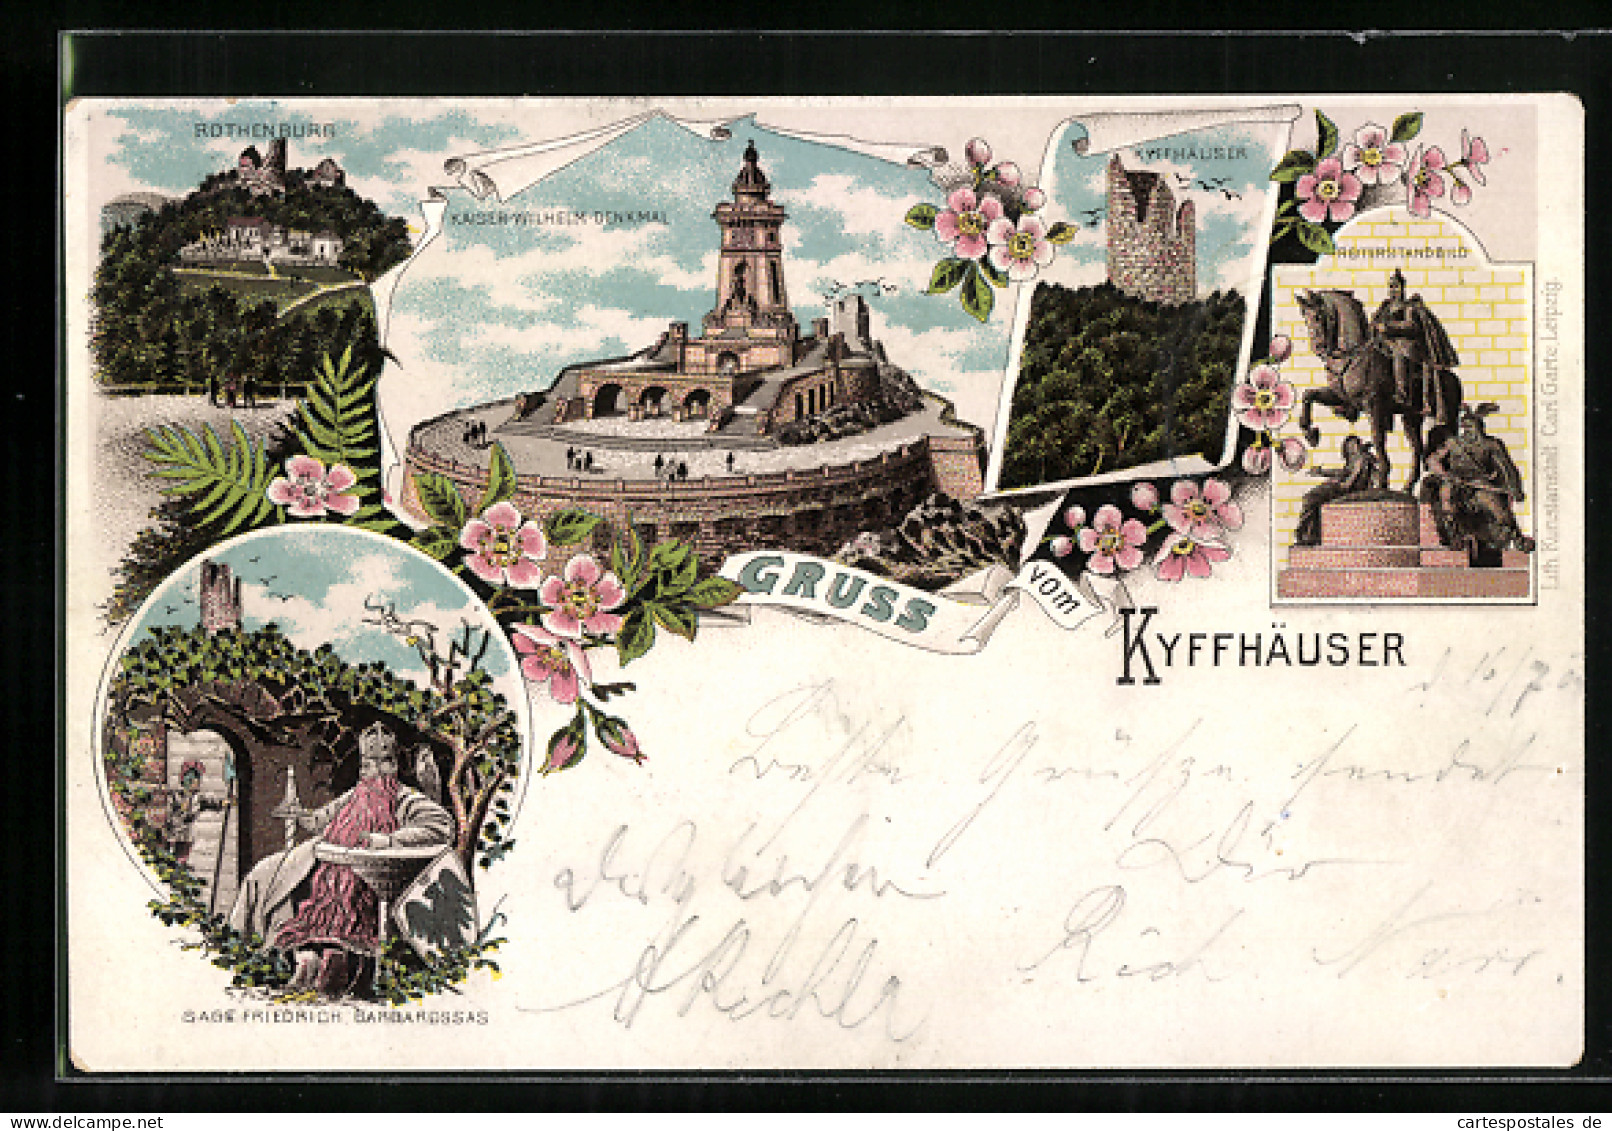 Lithographie Kyffhäuser, Rothenburg, Friedrich Barbarossa Und Kaiser-Wilhelm-Denkmal  - Kyffhaeuser